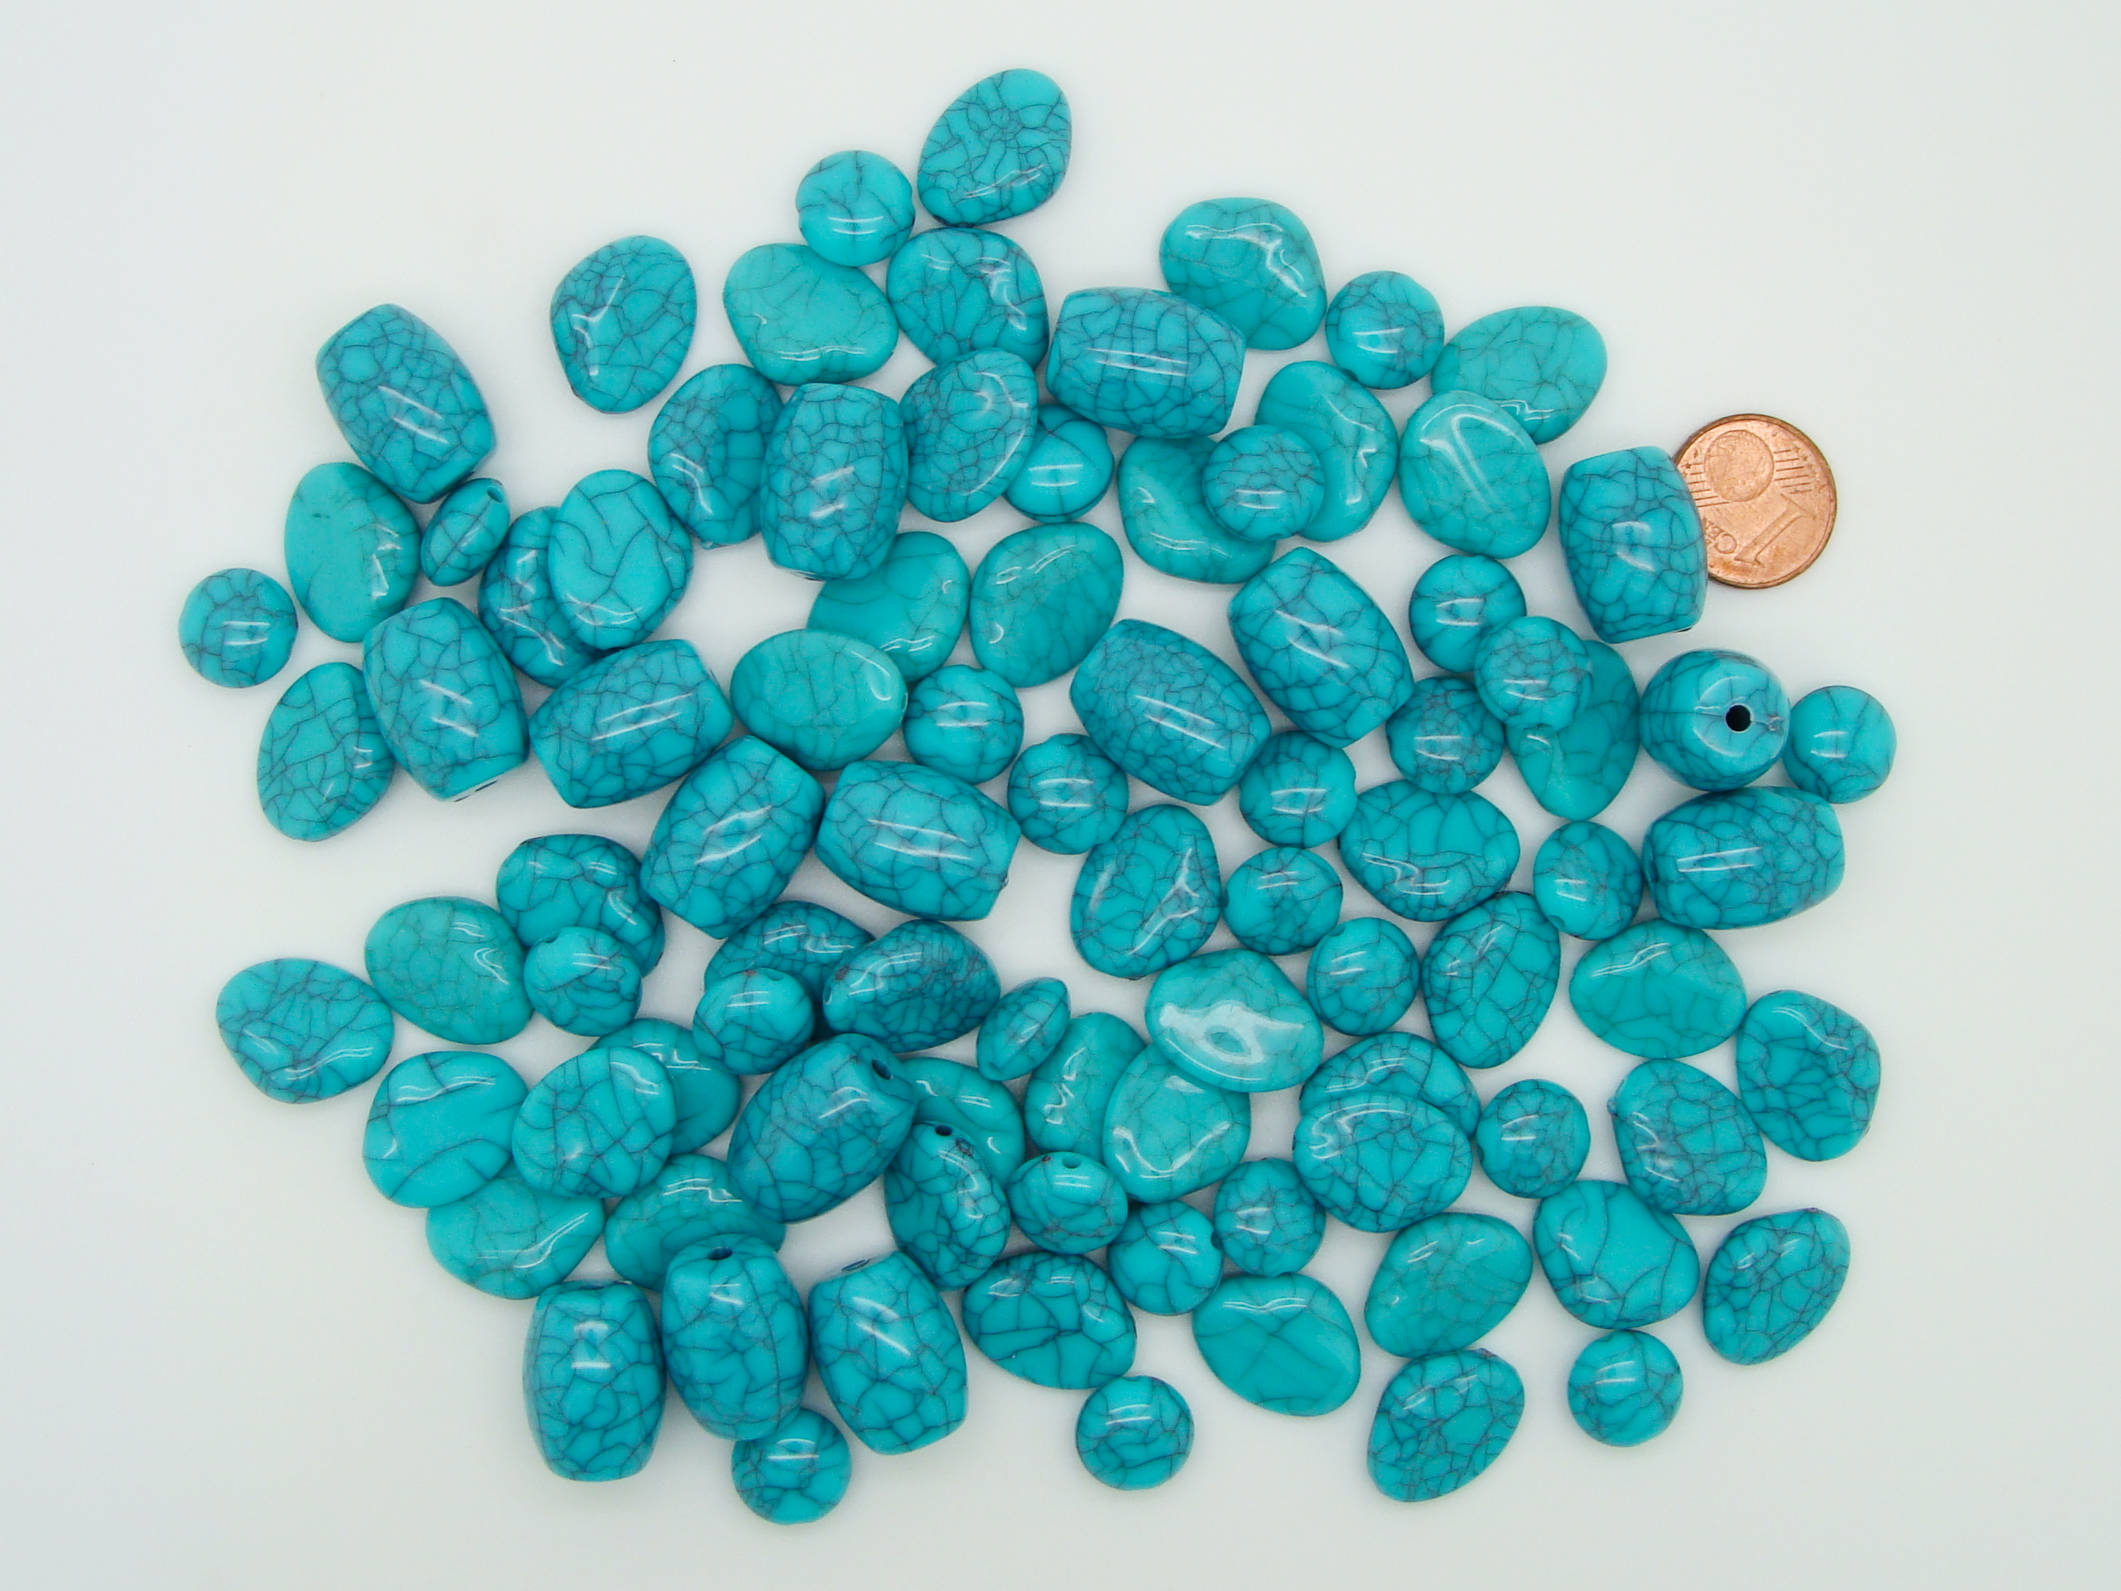 acry-75g-turquoise perle acrylique aspect turquoise economique